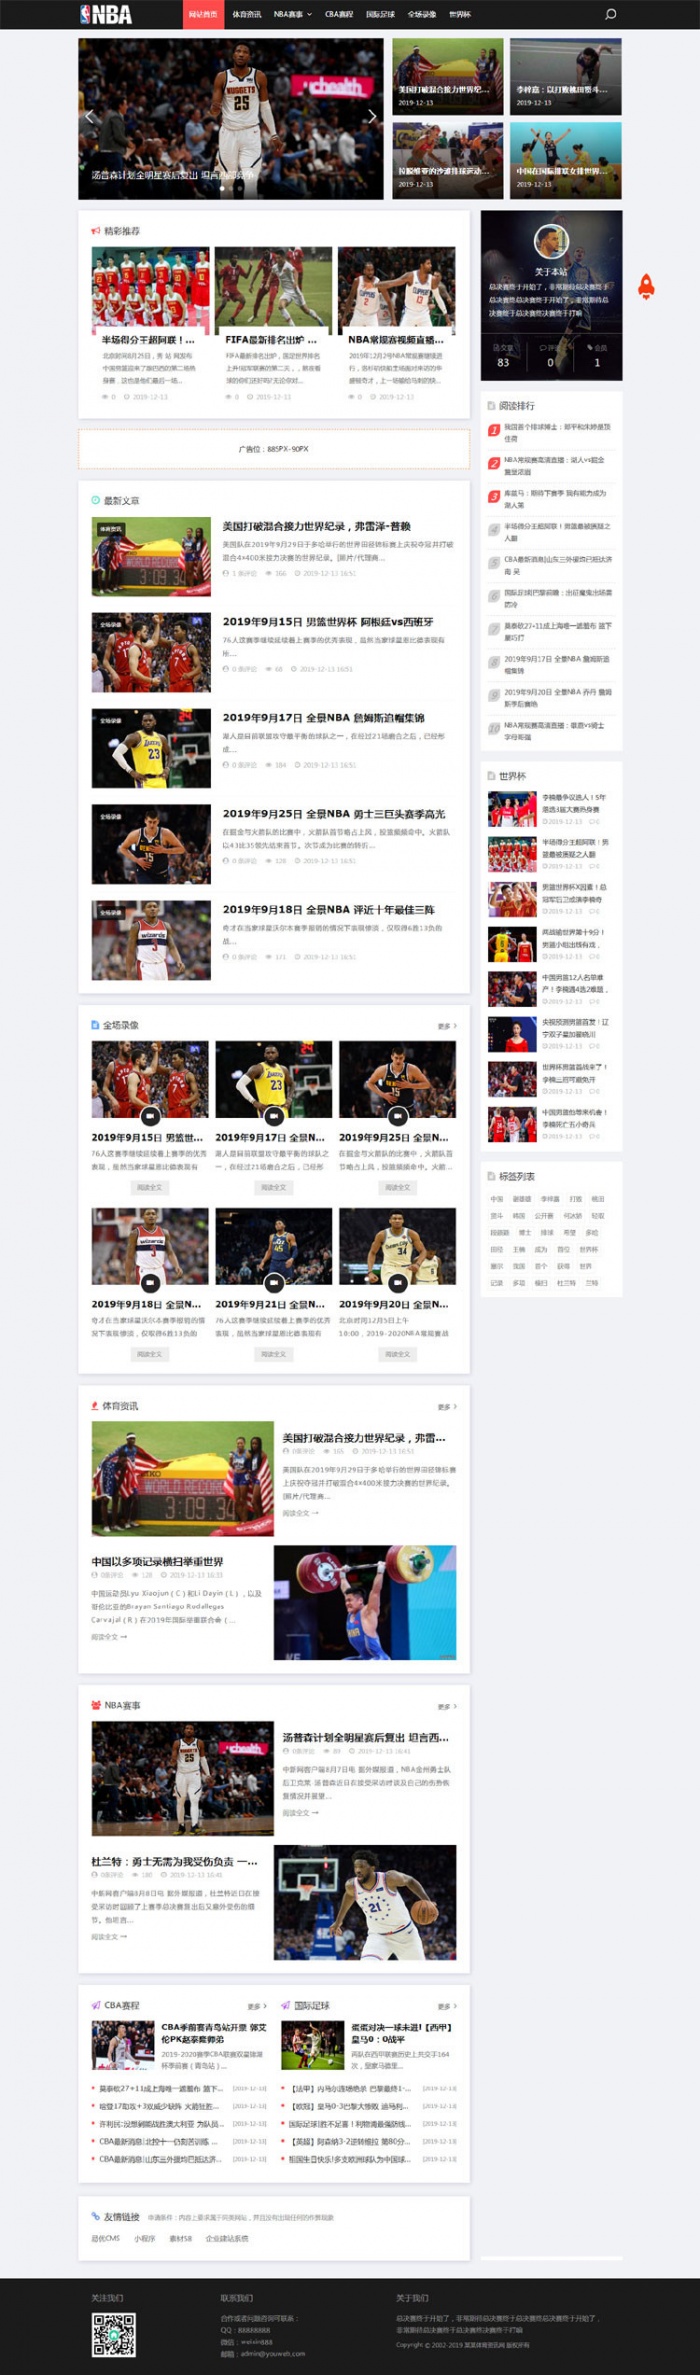 响应式NBA体育赛事新闻资讯网站织梦模板 